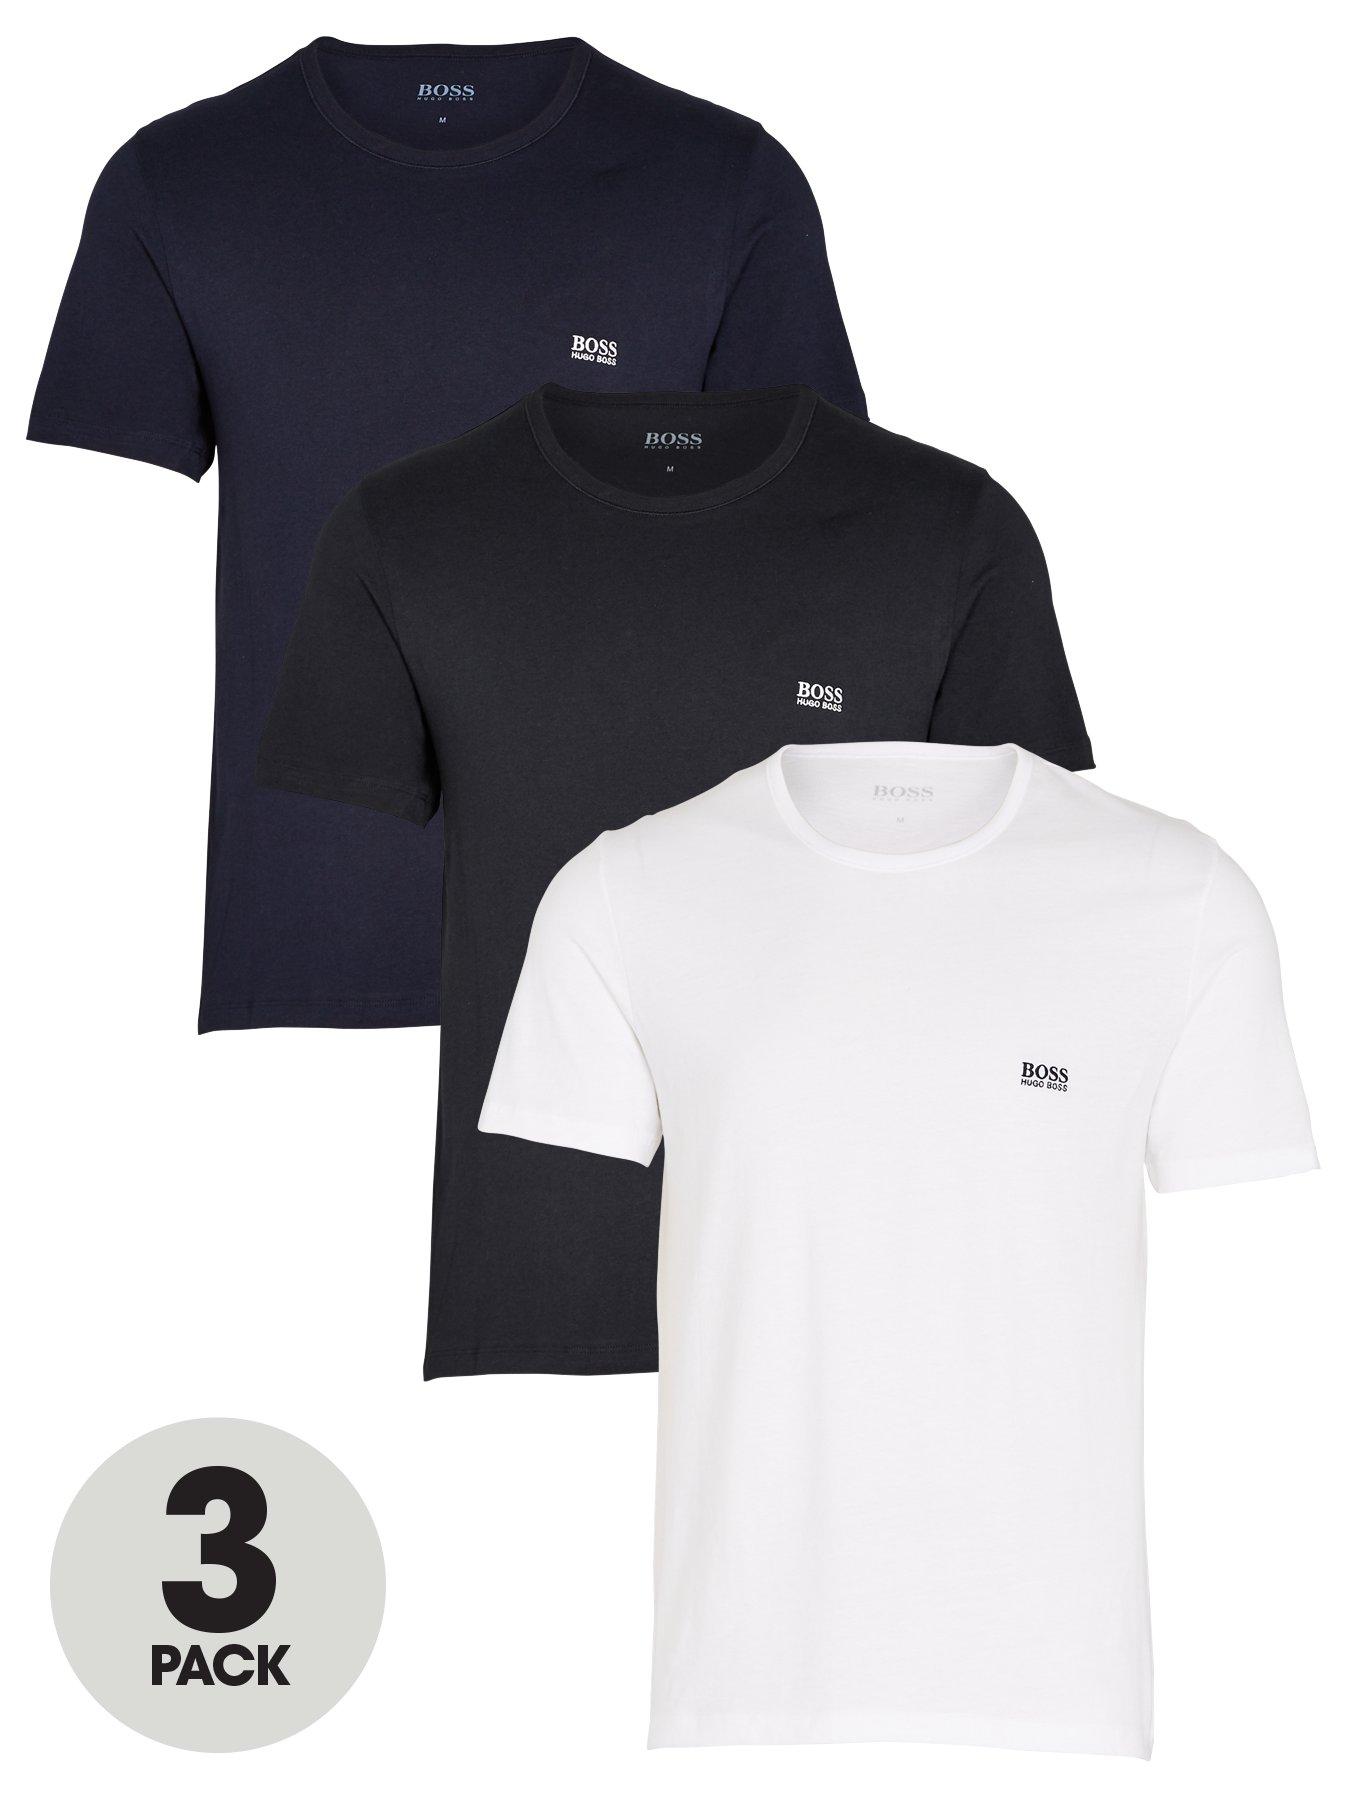 Nightwear & Loungewear Bodywear 3 Pack T-shirt - Black/White/Navy